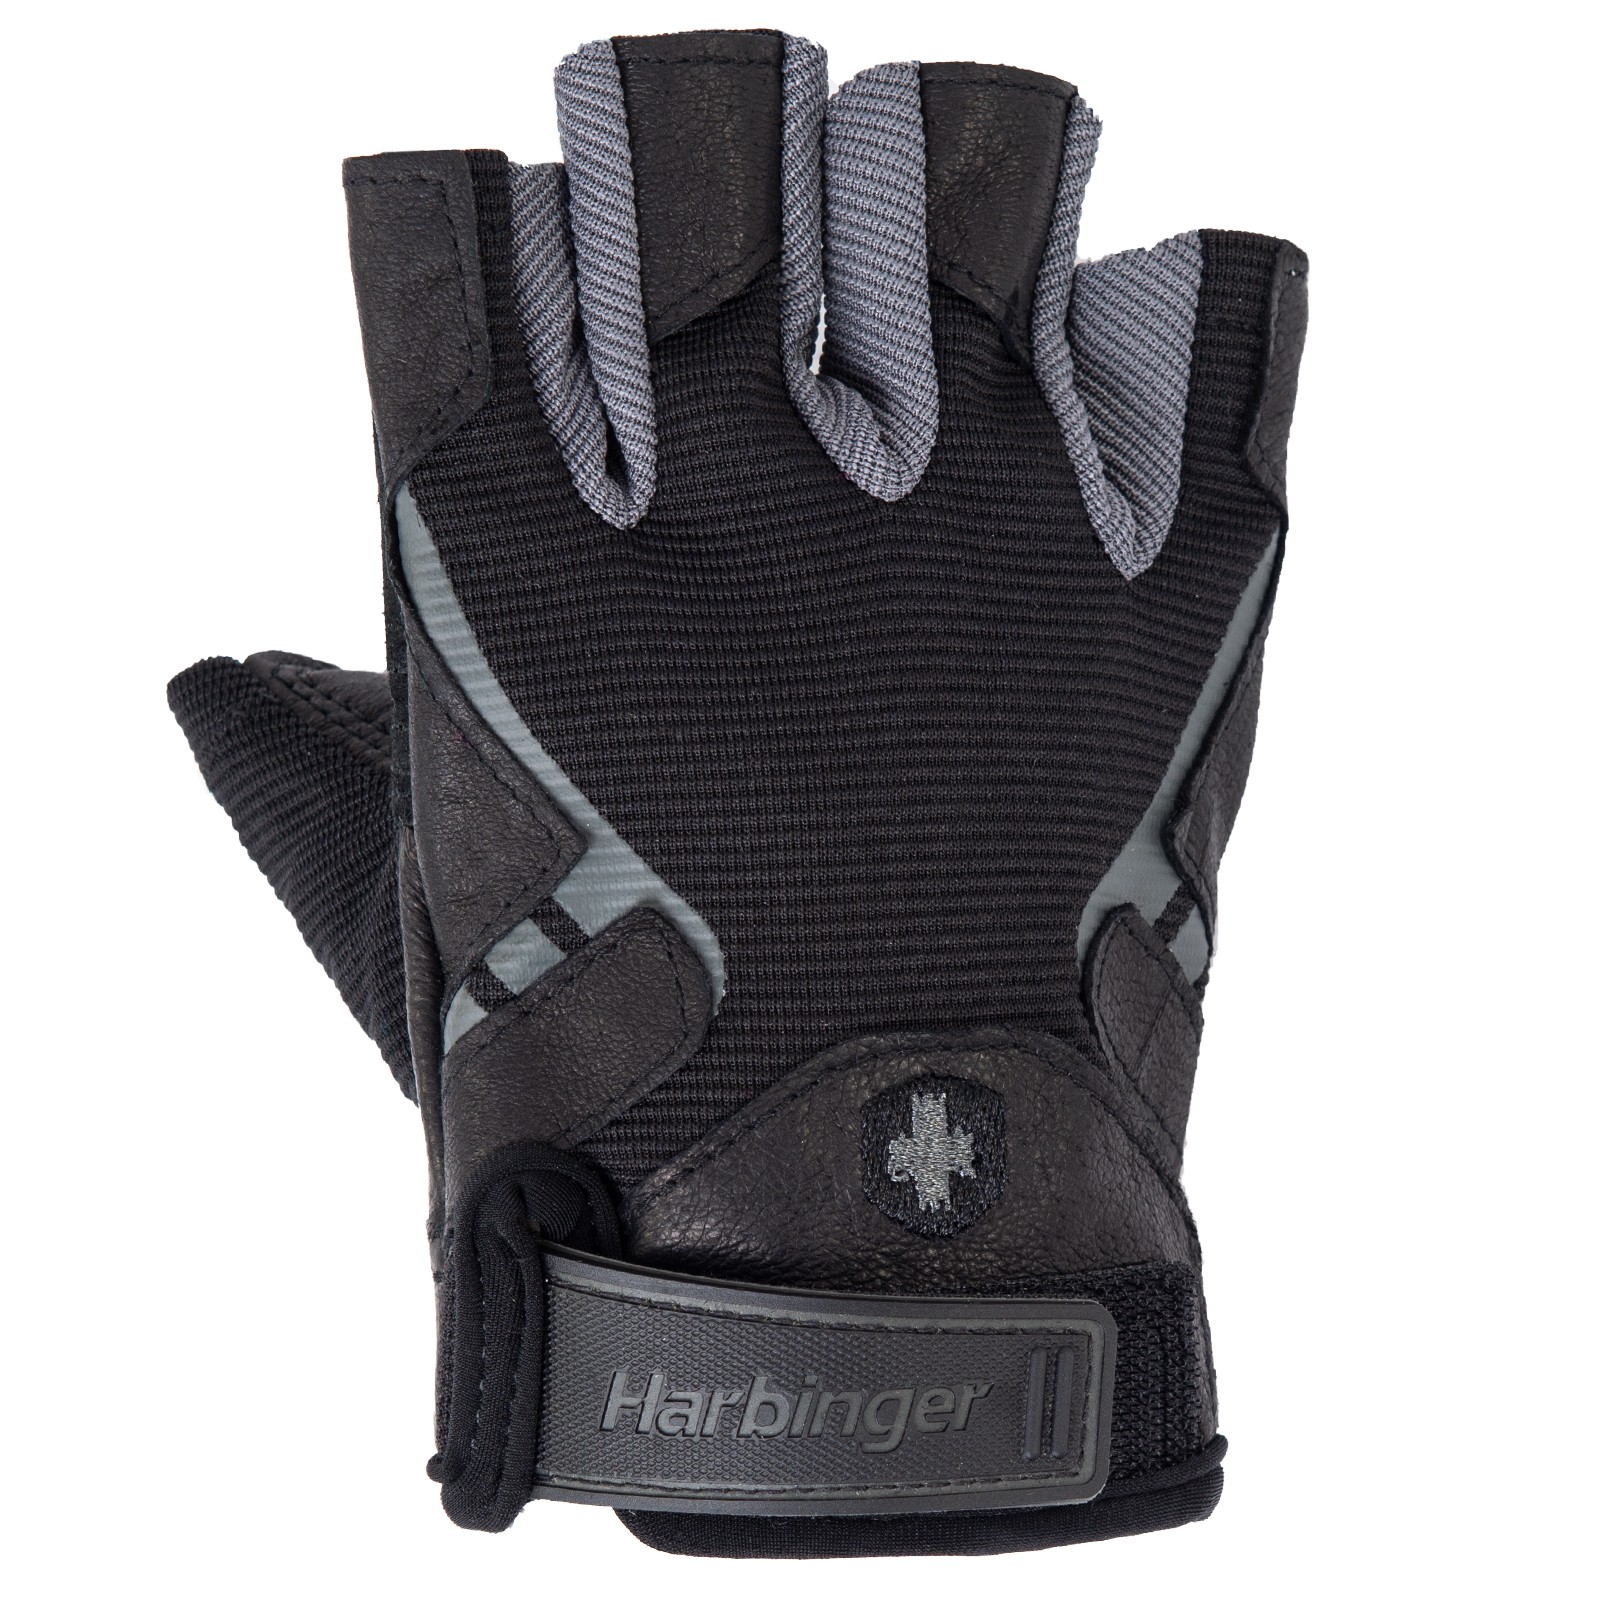 Harbinger Pro Gloves - Fitshop